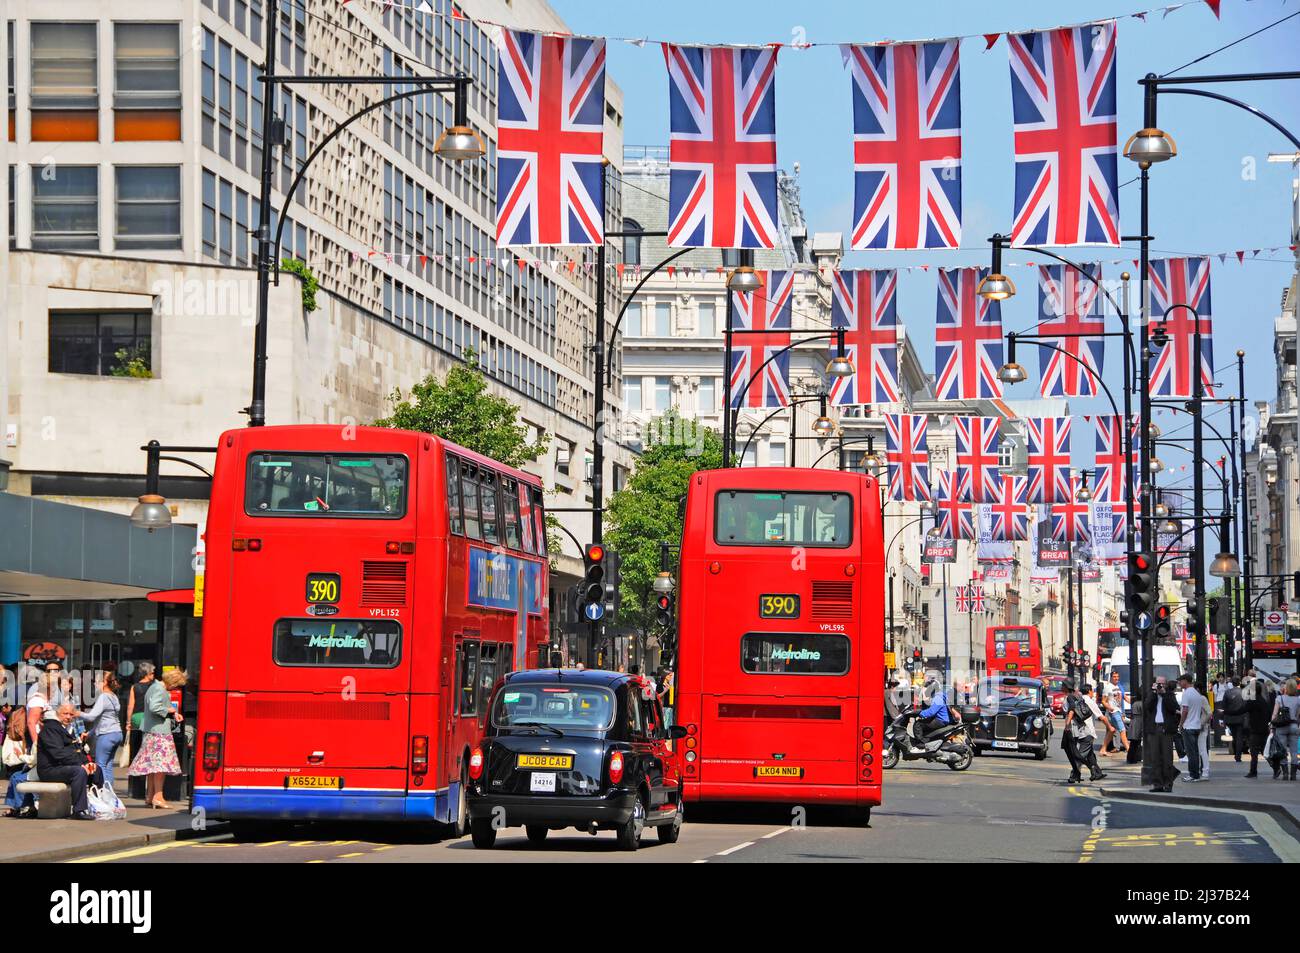 Oxford Street scena London Union Jack Bandiera per Queens Jubilee & Olimpiadi 2012 celebrazioni due autobus a due piani rossi & taxi nero Inghilterra UK Foto Stock